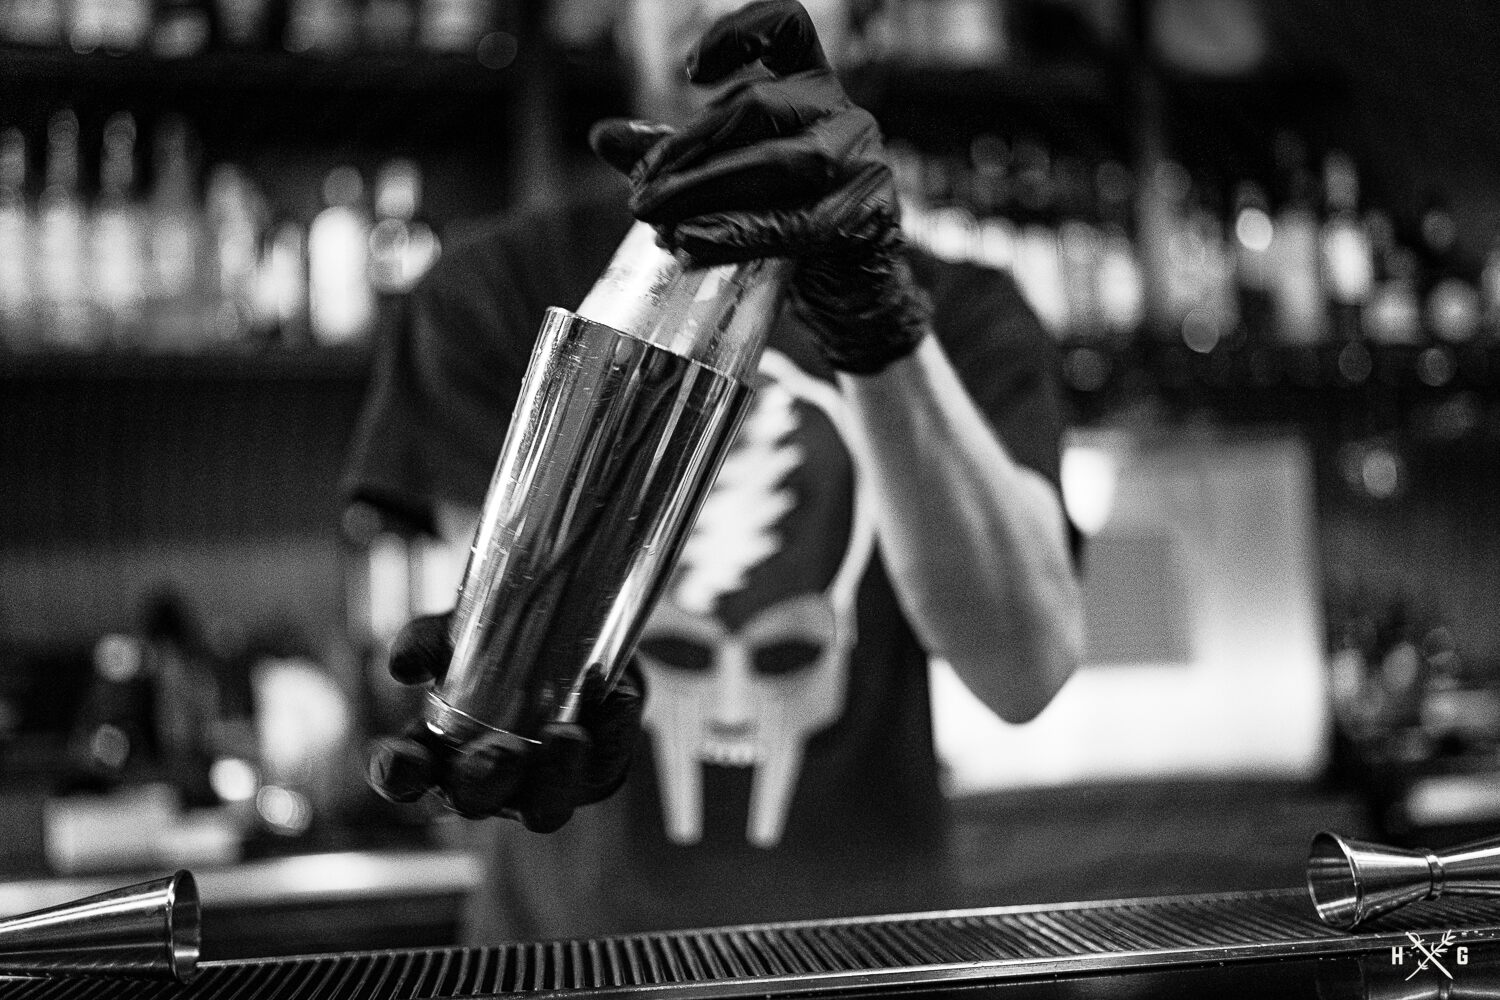 bartender before COVID-19 shutdown